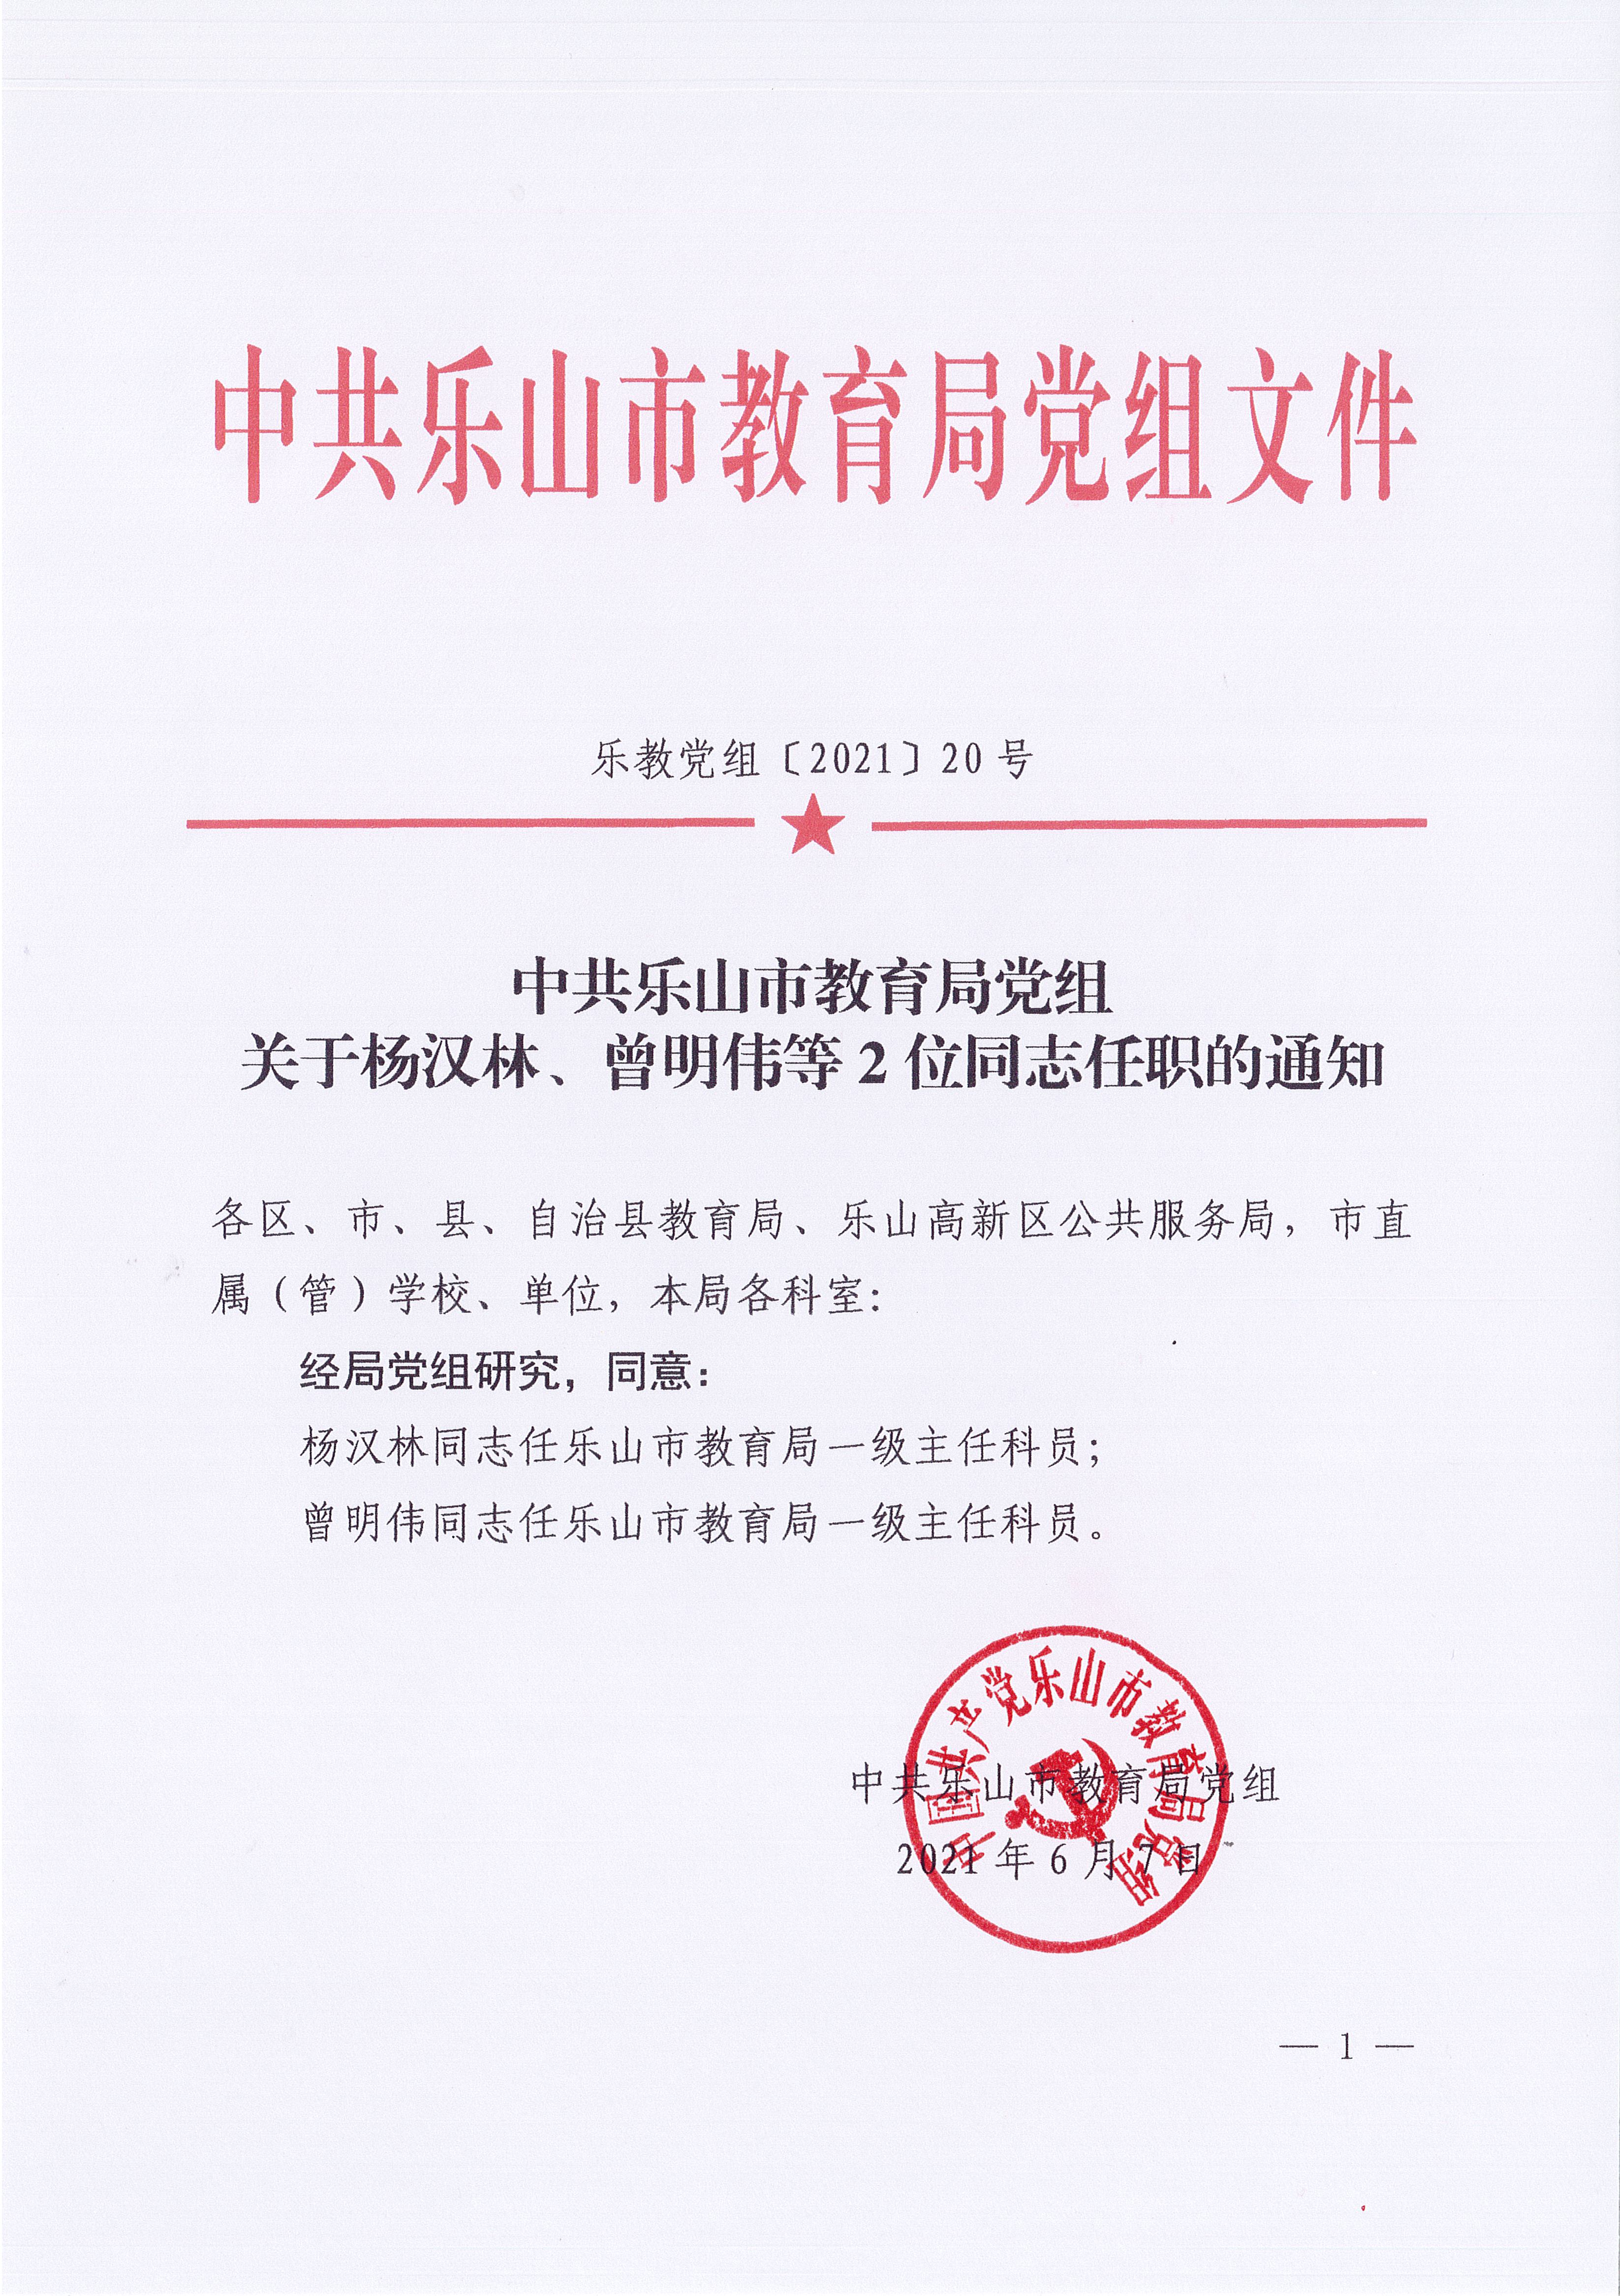 乐教党组〔2021〕20号关于杨汉林、曾明伟等2位同志任职的通知_页面_1